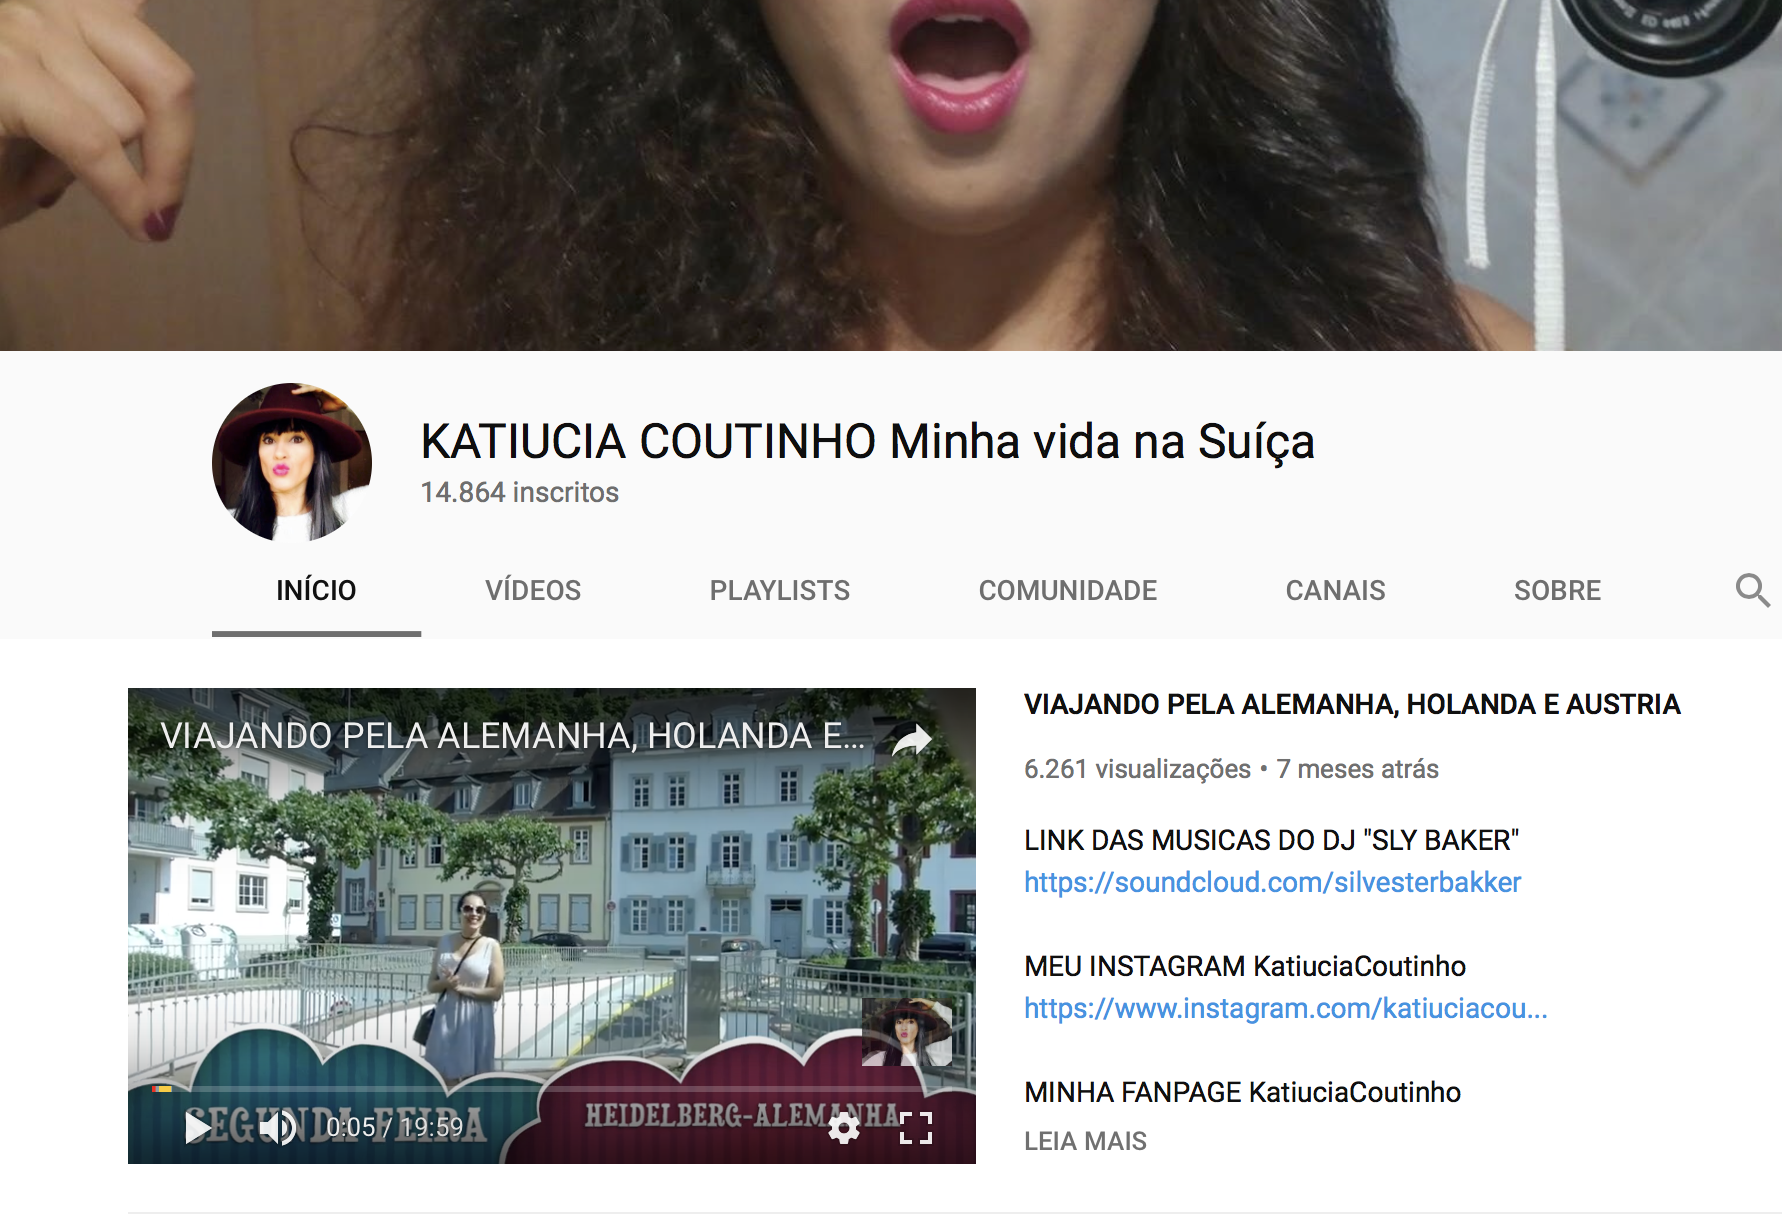 Página do canal youtube de Kautiucia Coutinho